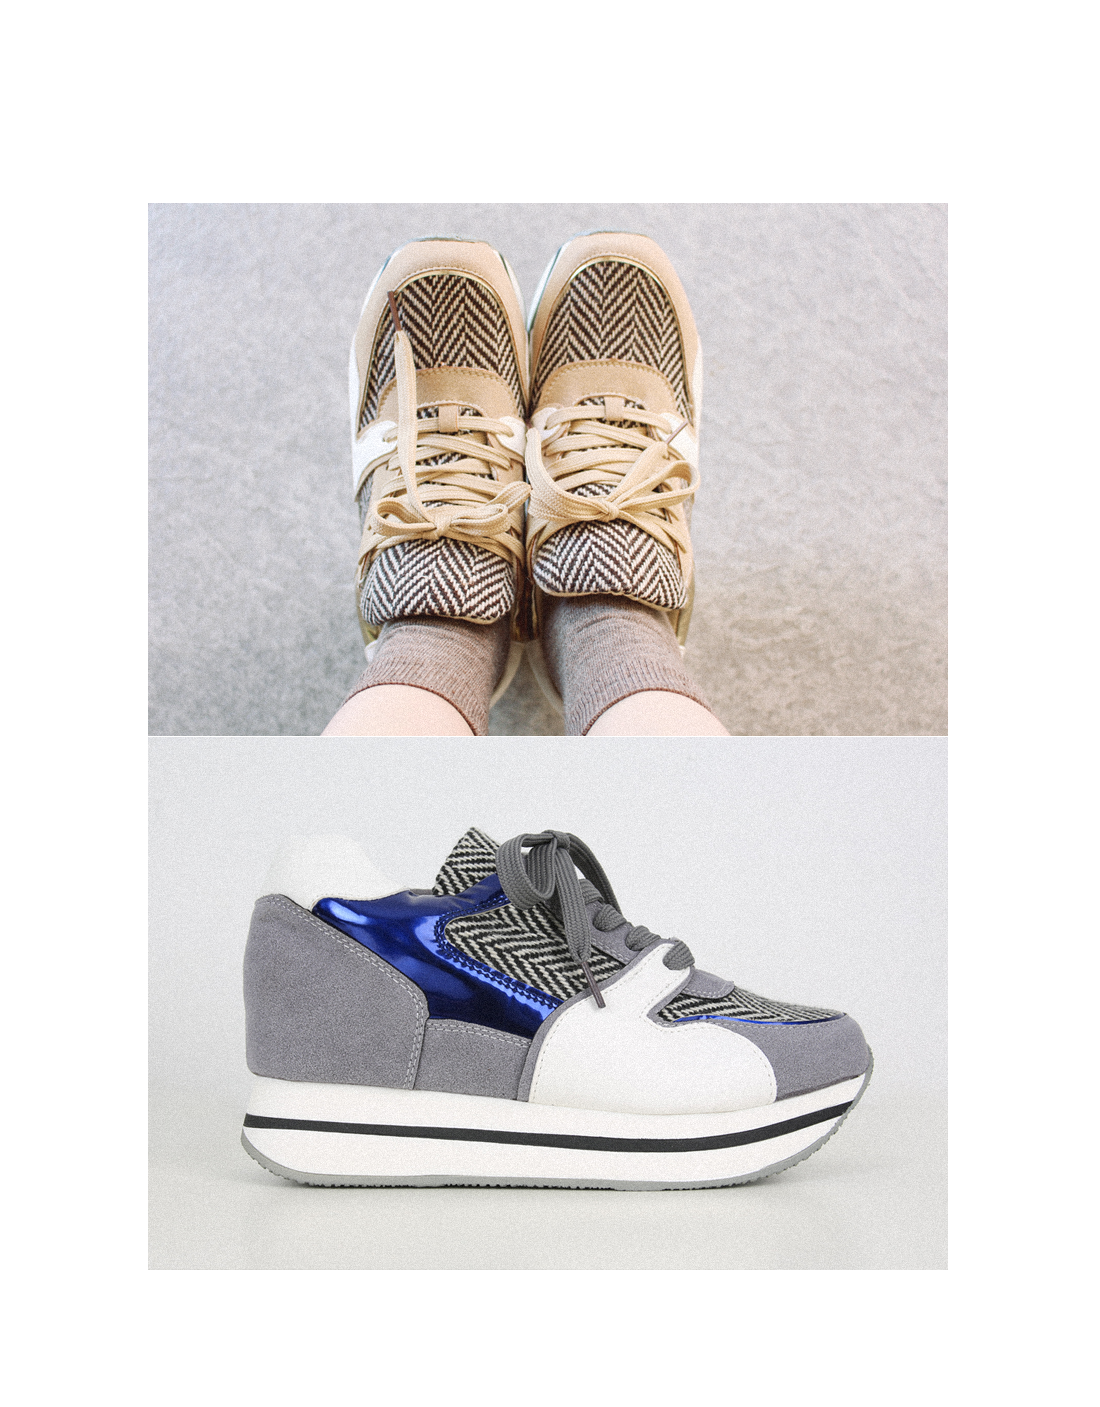 hidden platform sneakers|coii